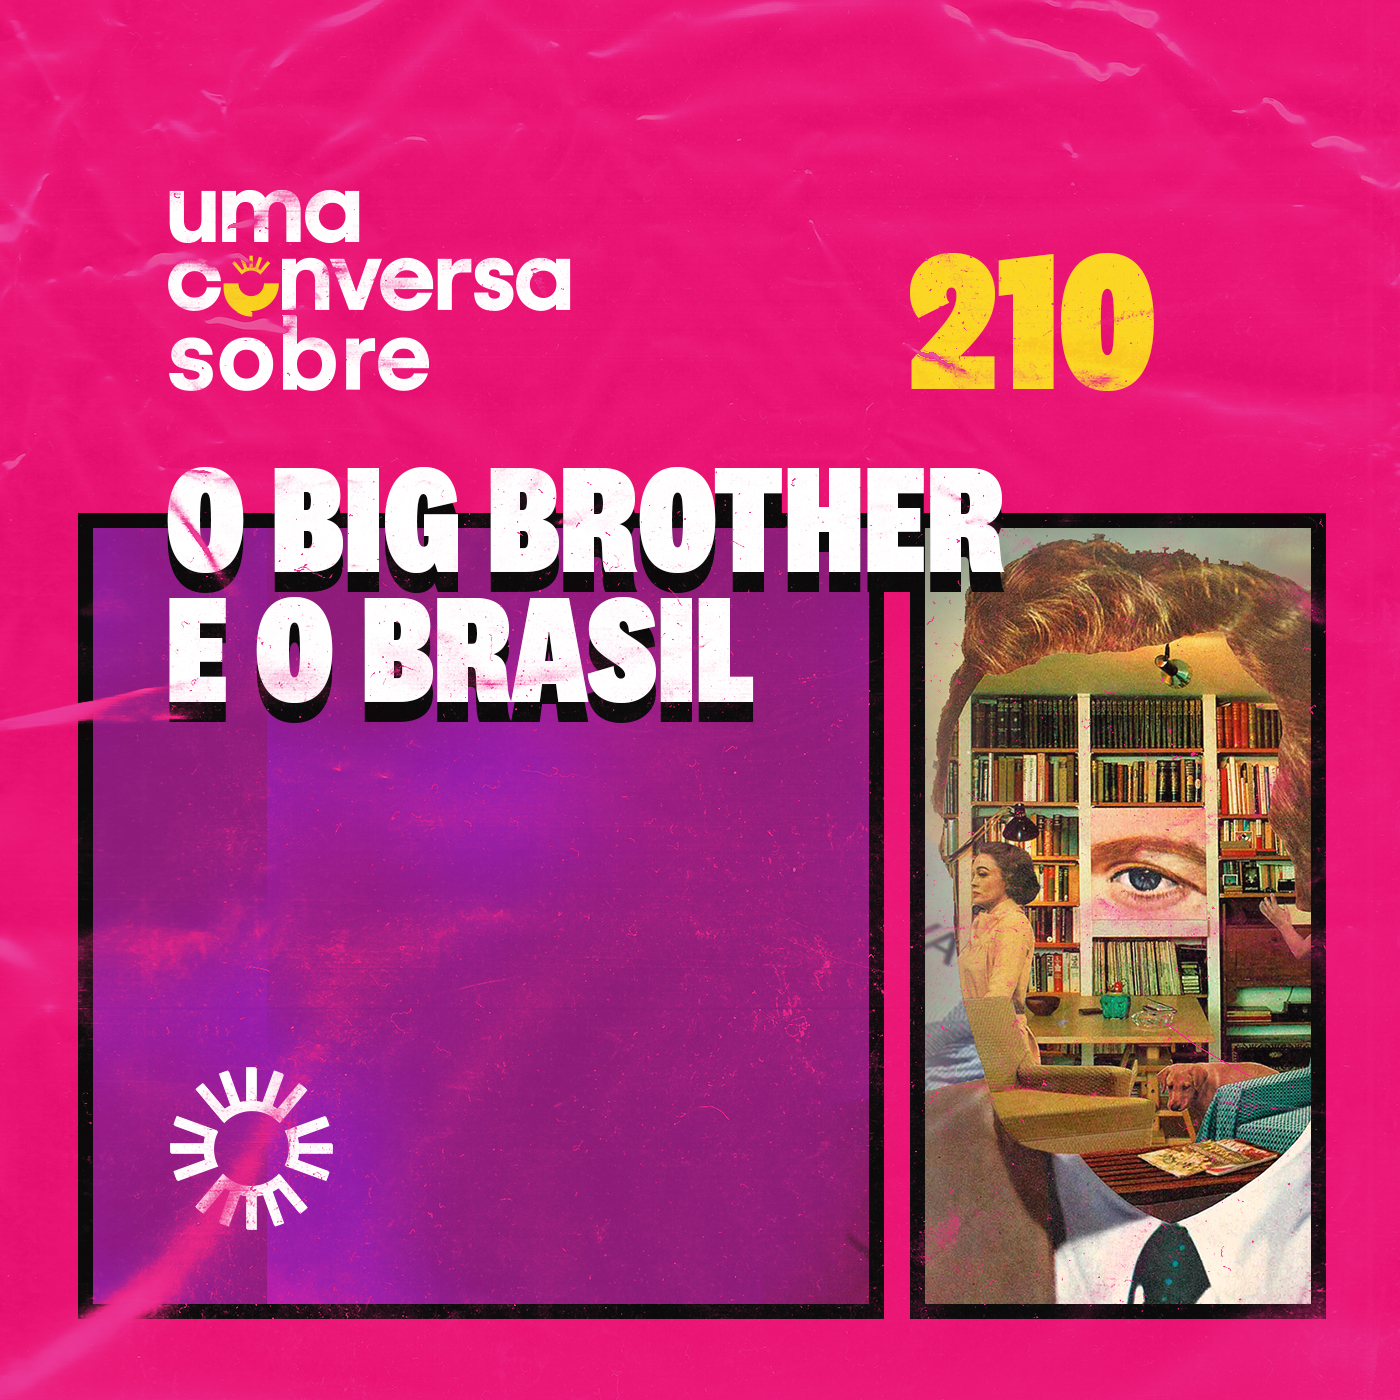 Sobre o Big Brother e o Brasil